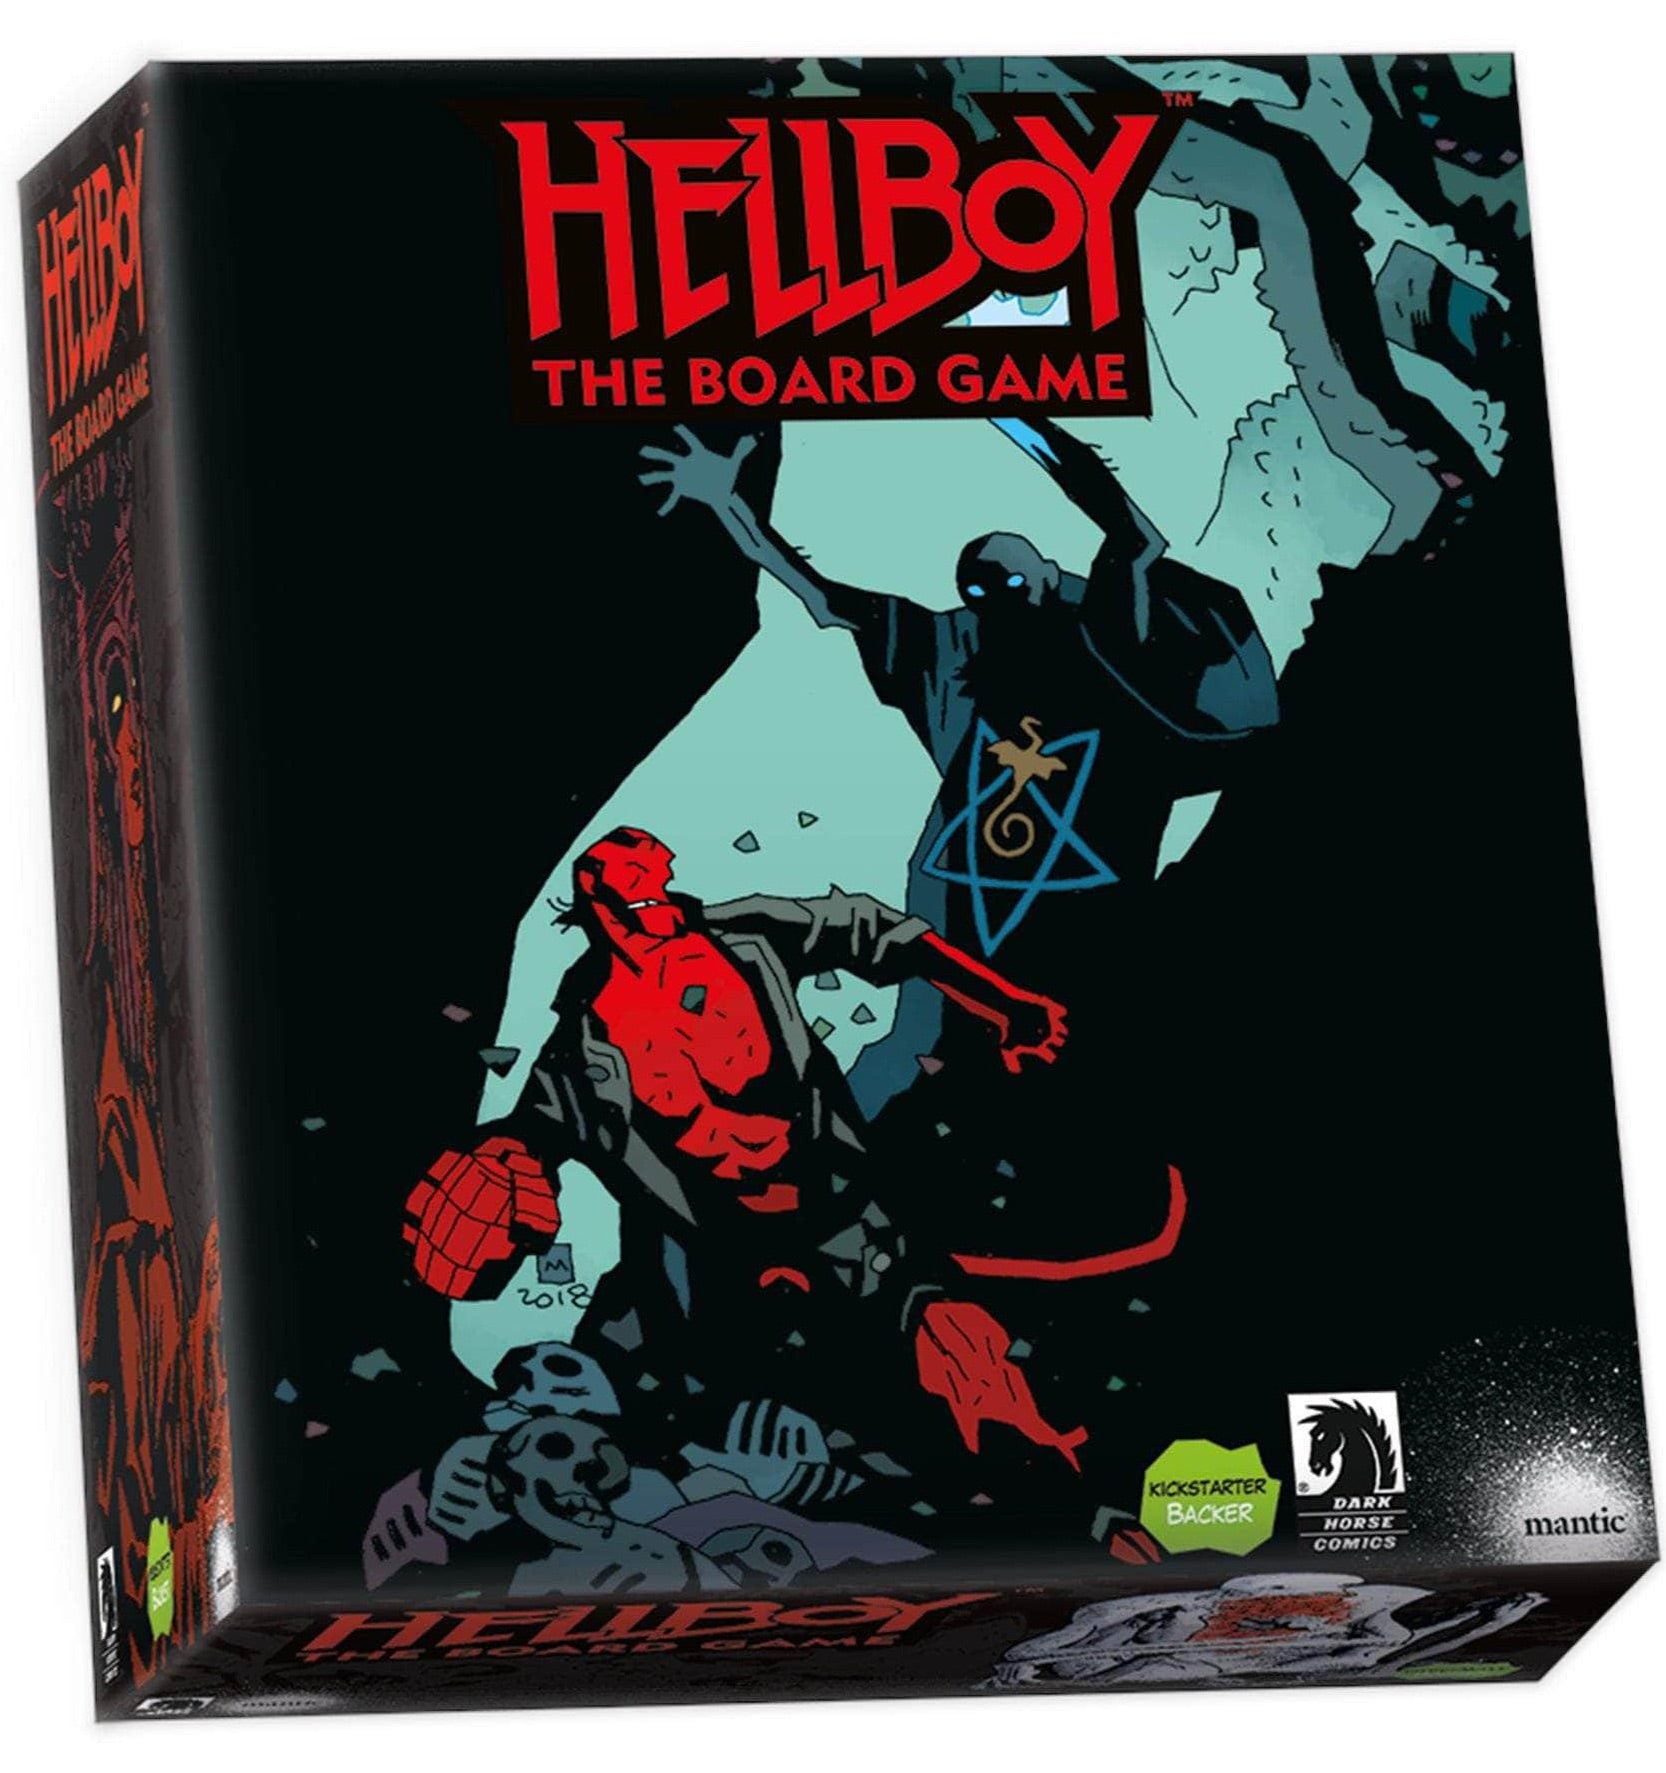 Hellboy: The Board Game - Pledge of Doom Bundle (Kickstarter Pre-Order Special) Kickstarter Board Game Expansion Mantic Games KS001139A